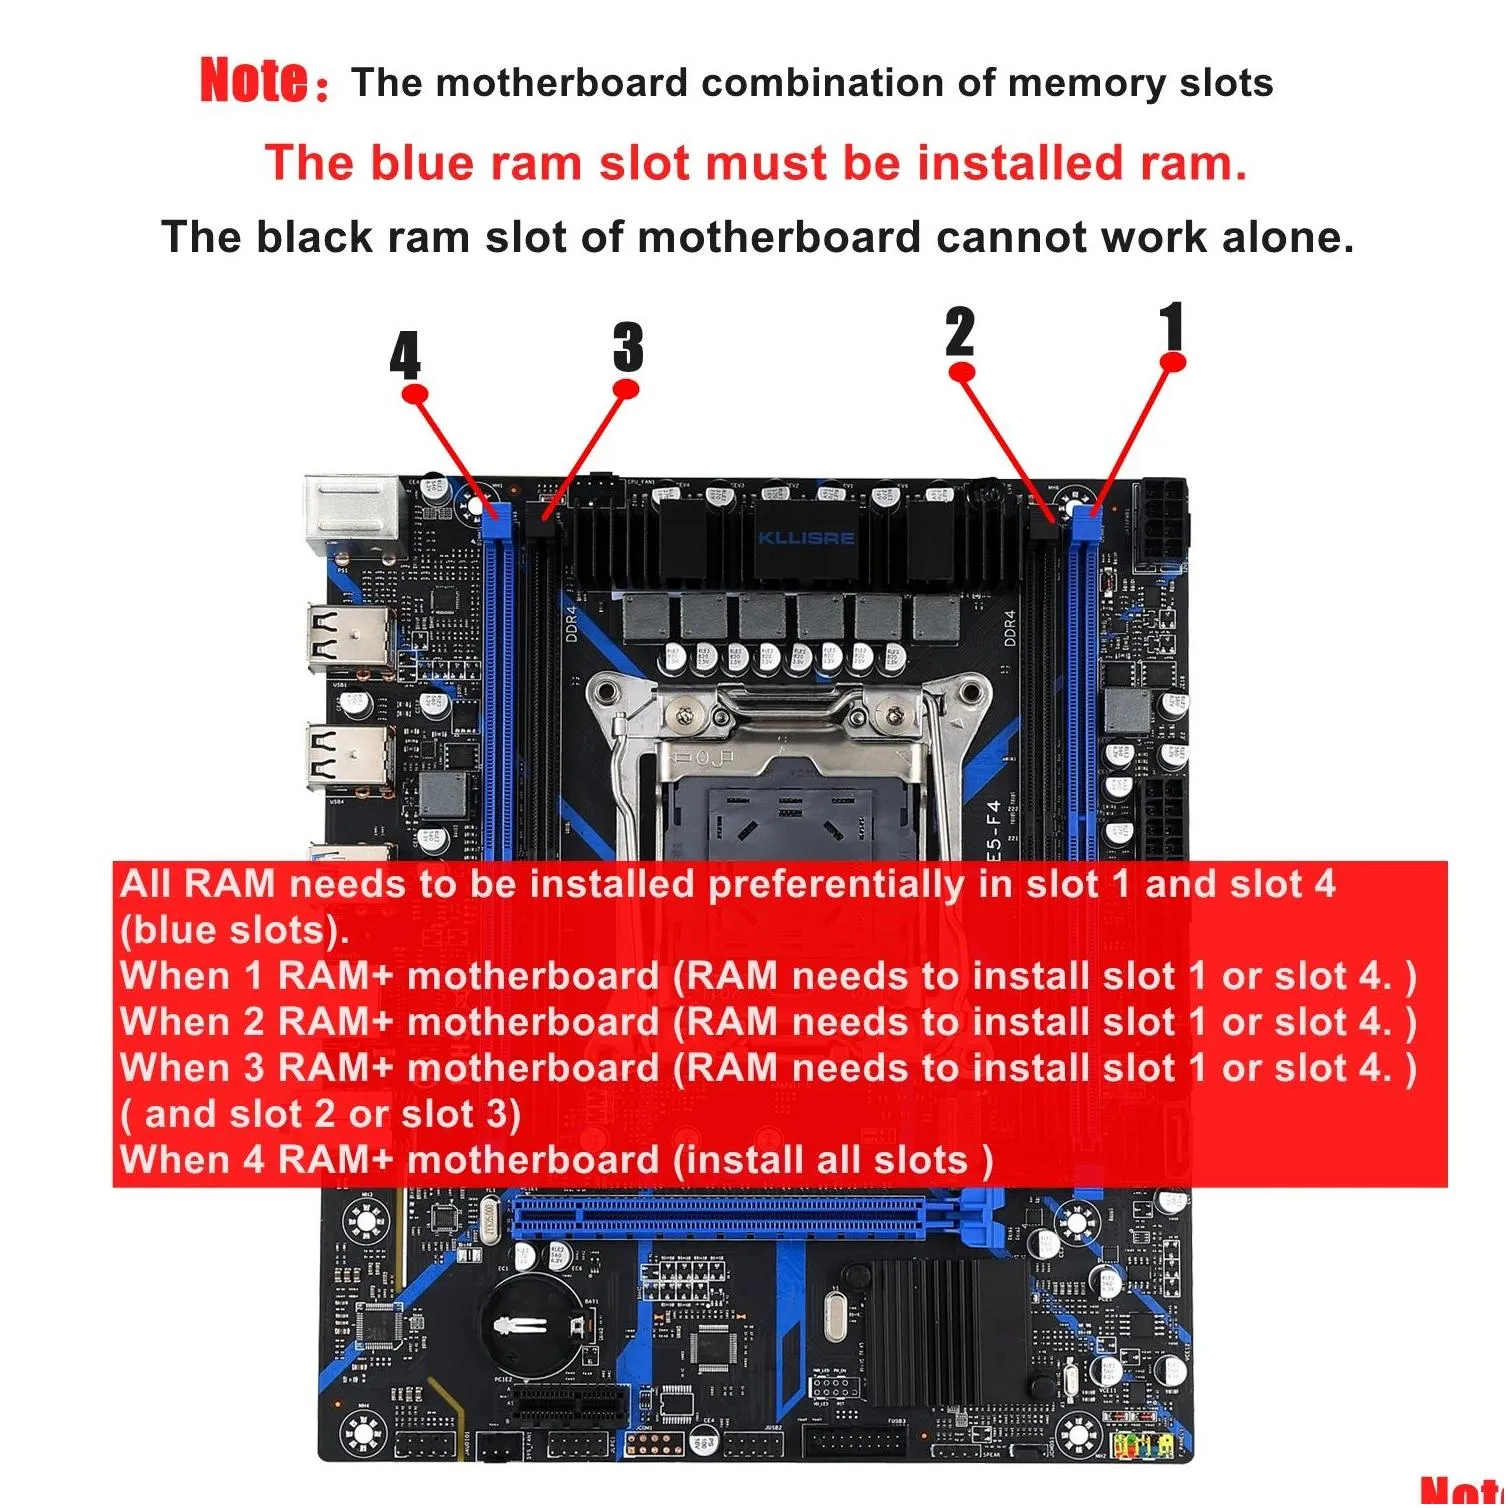 Pens Kllisre X99 Motherboard Combo Kit Set Lga 20113 Xeon E5 2630 V3 Cpu Ddr4 16gb (2pcs 8g) 2133mhz Ecc Memory